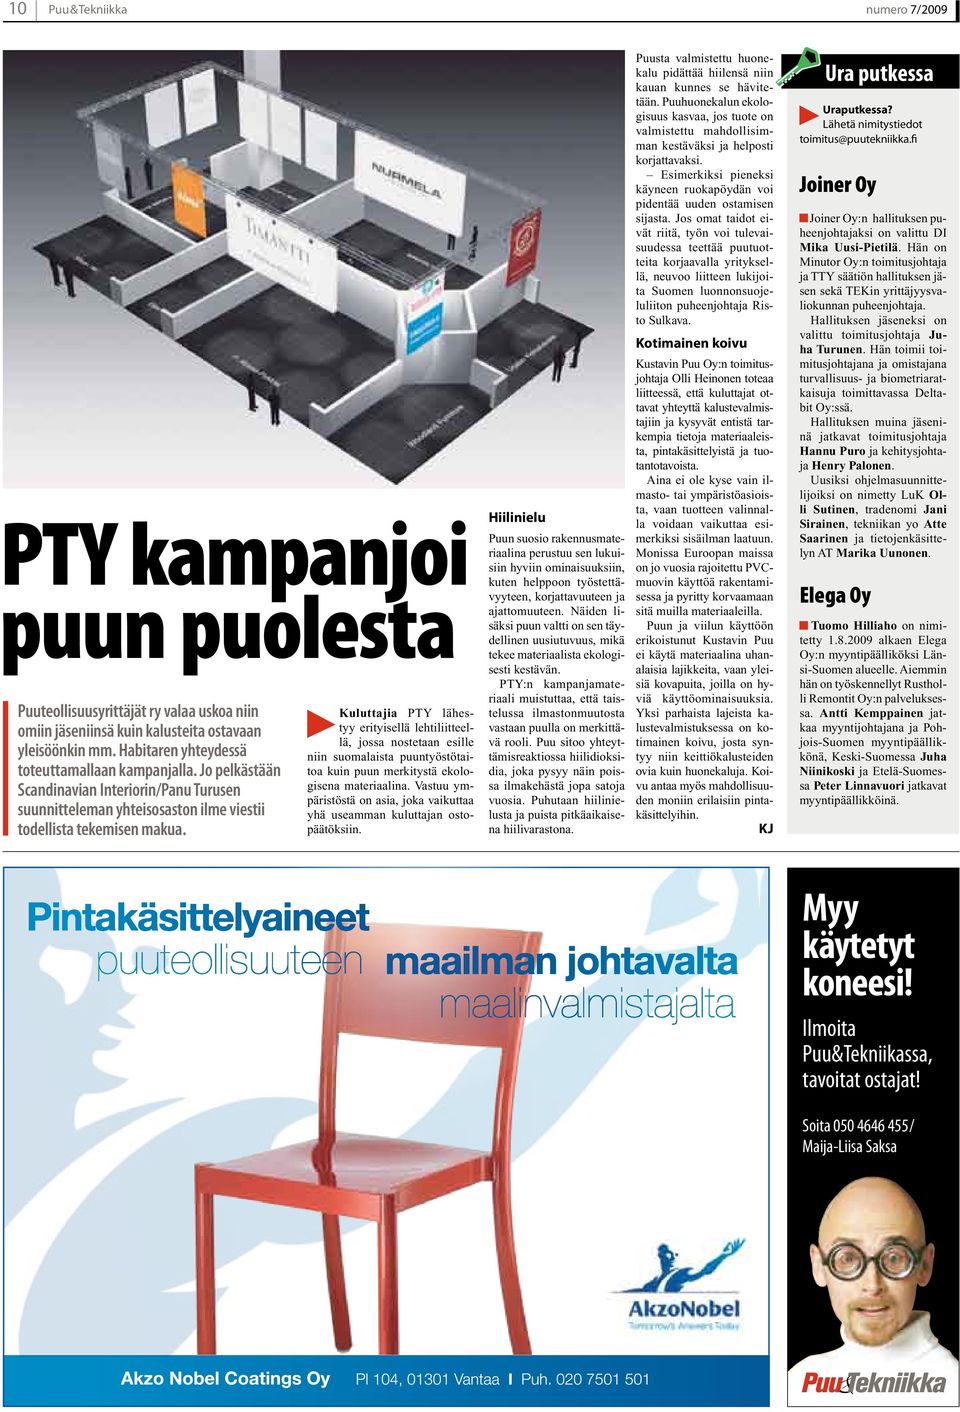 Kuluttajia PTY lähestyy erityisellä lehtiliitteellä, jossa nostetaan esille niin suomalaista puuntyöstötaitoa kuin puun merkitystä ekologisena materiaalina.